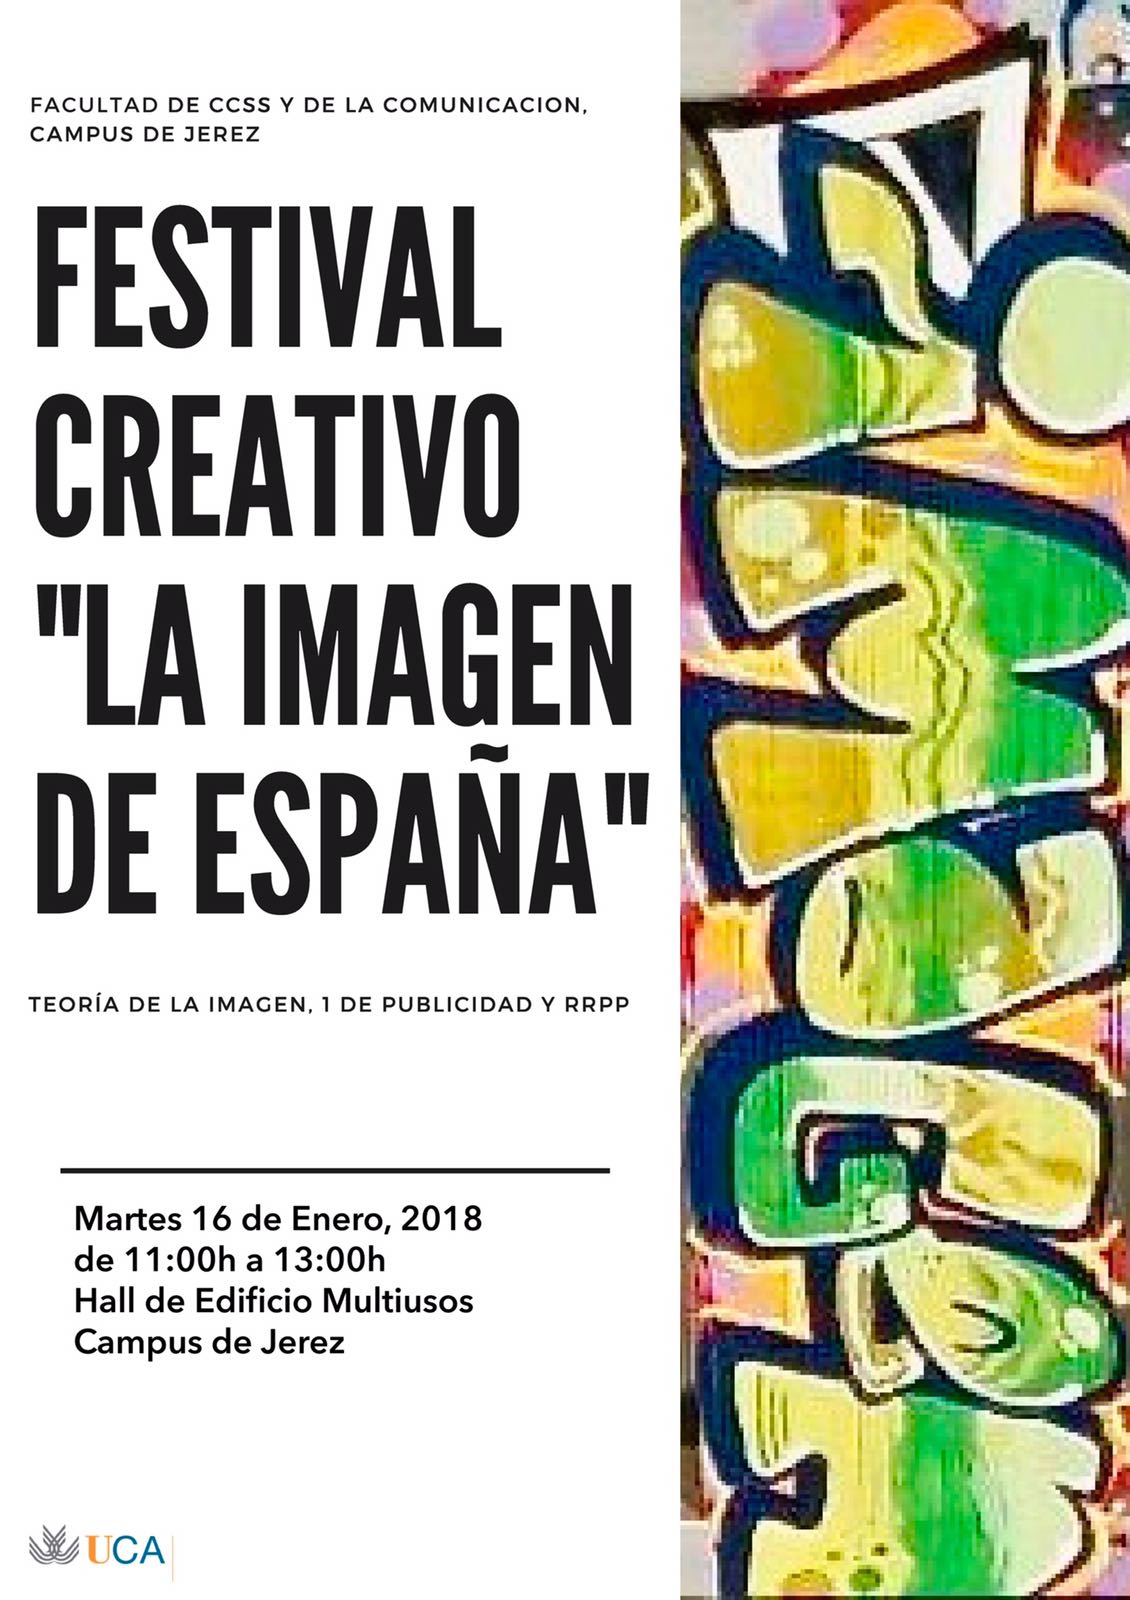 Festival Creativo “La imagen de España”